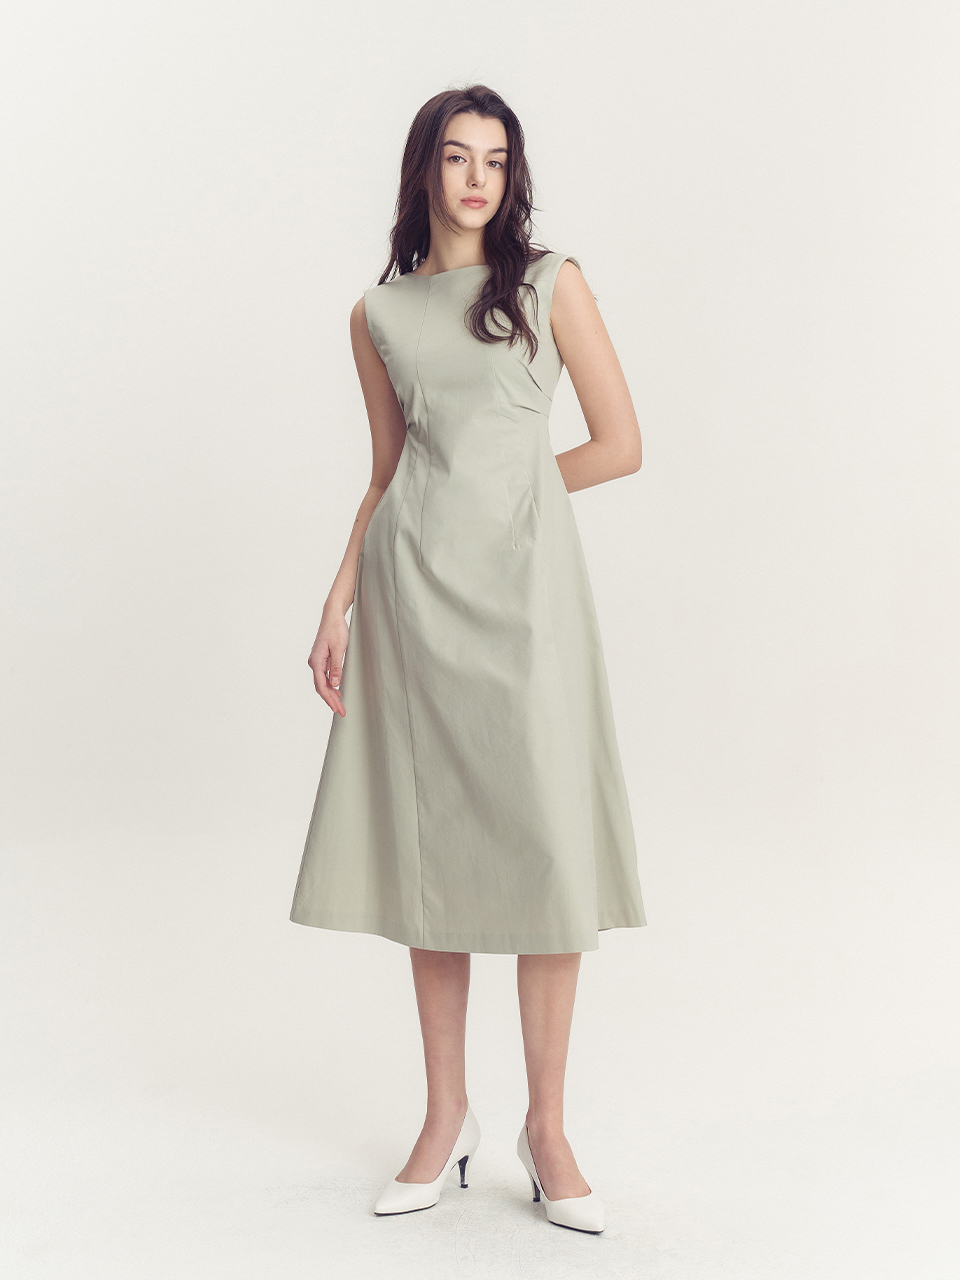 로즈라인 드레스 - 민트